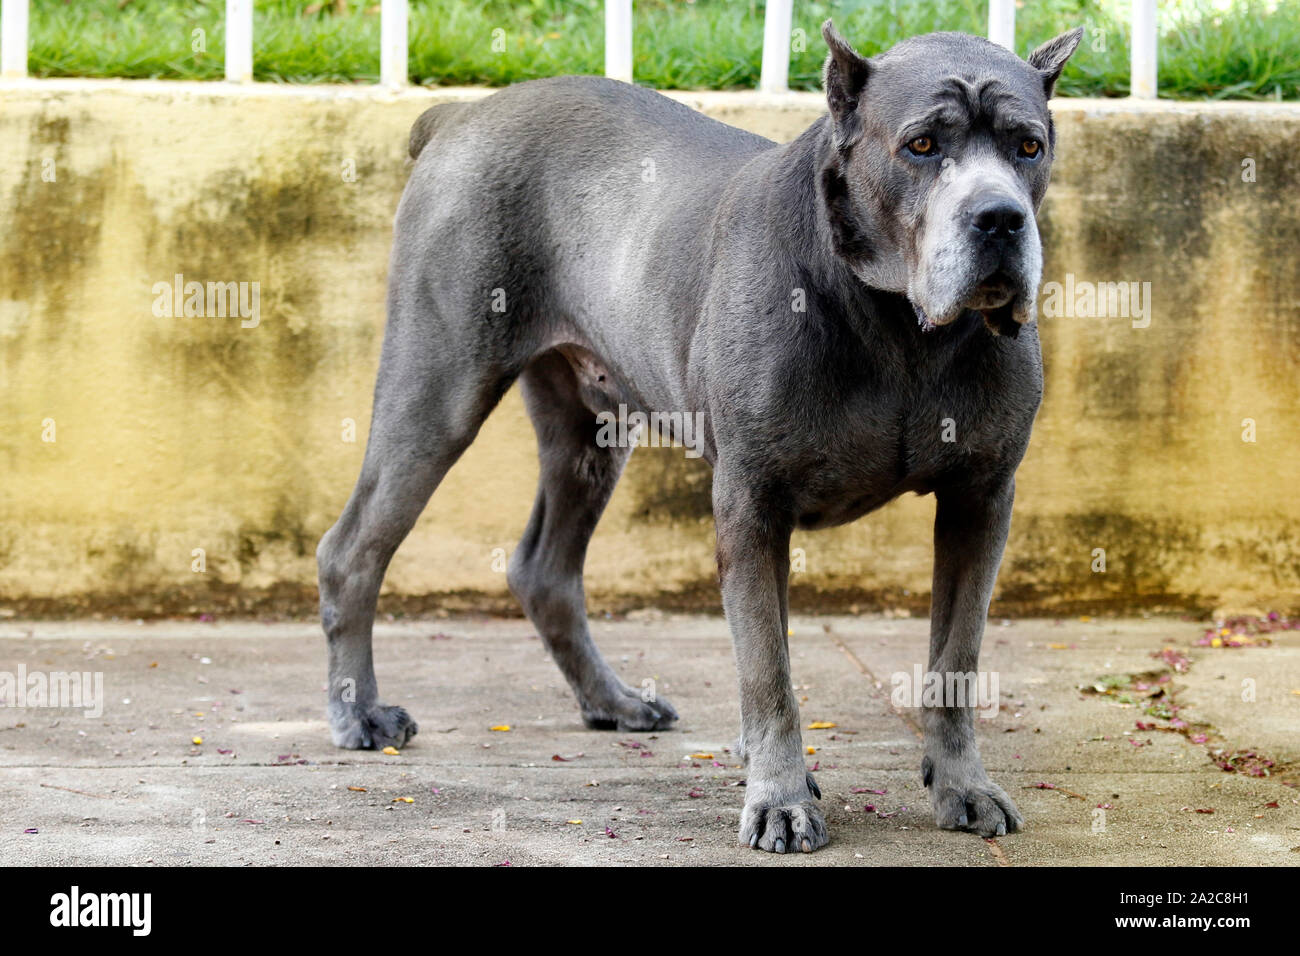 Hund Der Cane Corso Rennen der Erwachsenen in der hochmütigen Haltung  Stockfotografie - Alamy